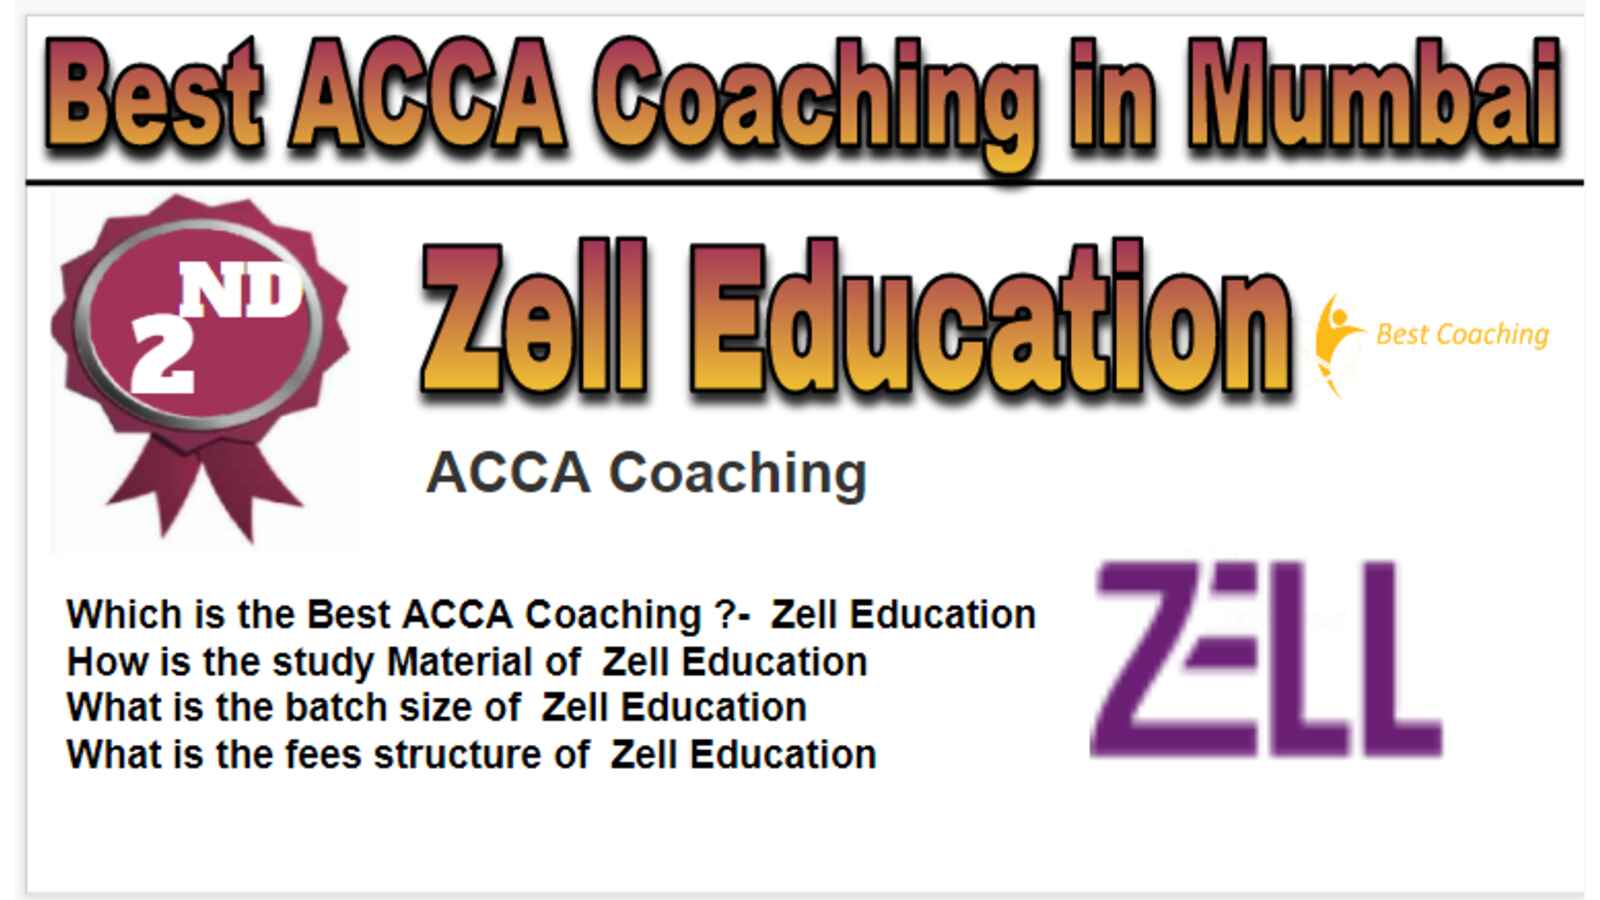 Rank 2 Best ACCA Coaching in Mumbai